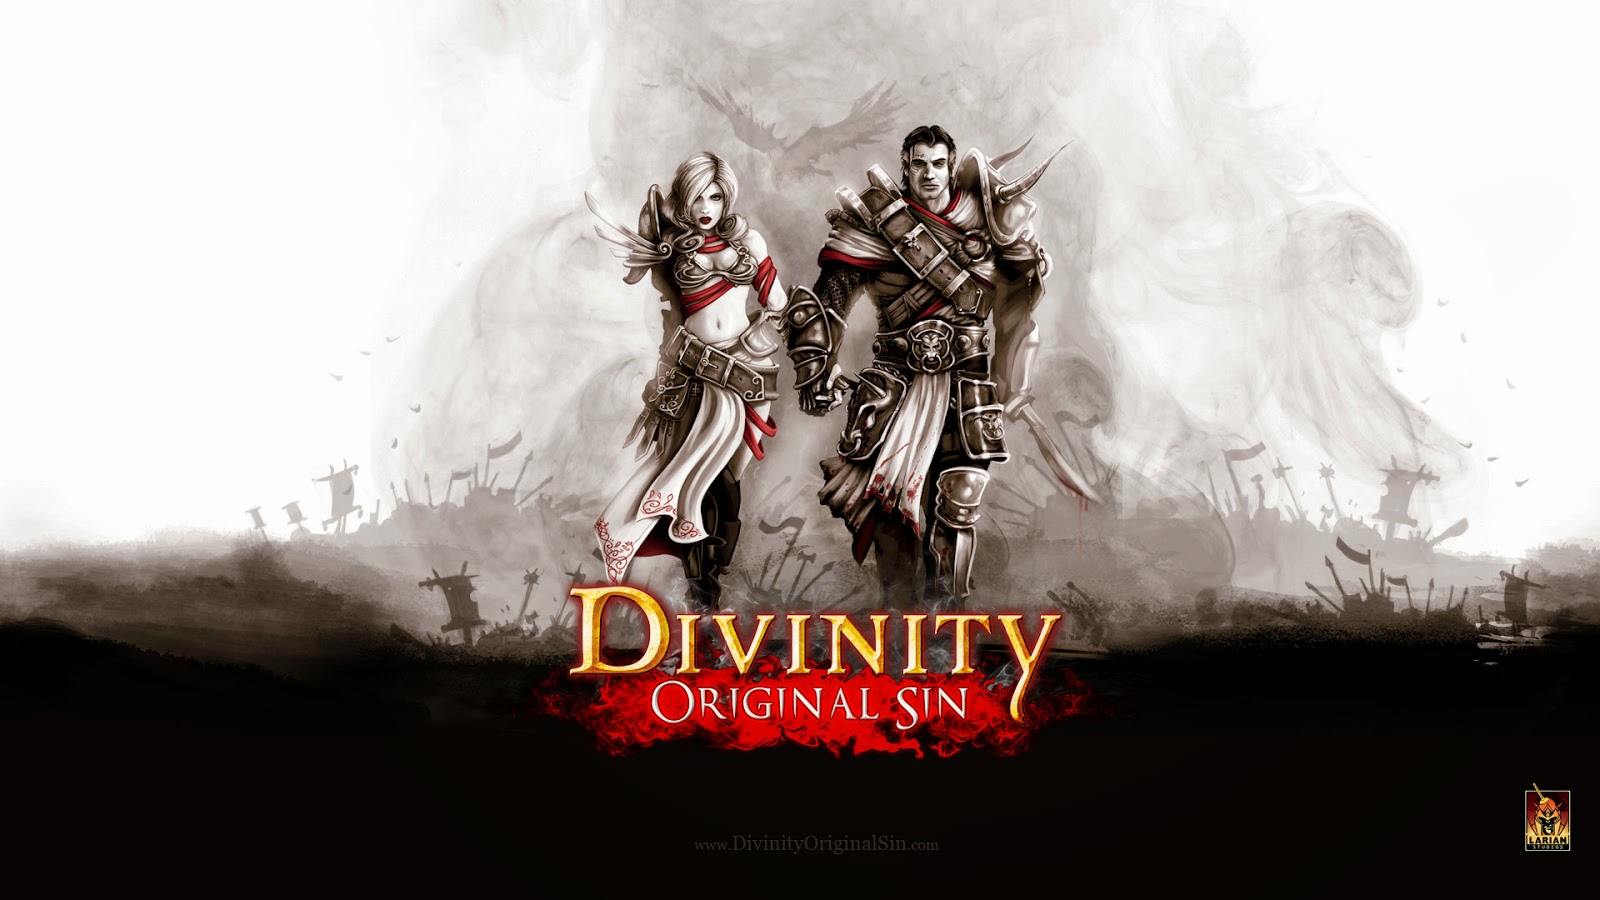 Divinity Original Sin, traducido al español